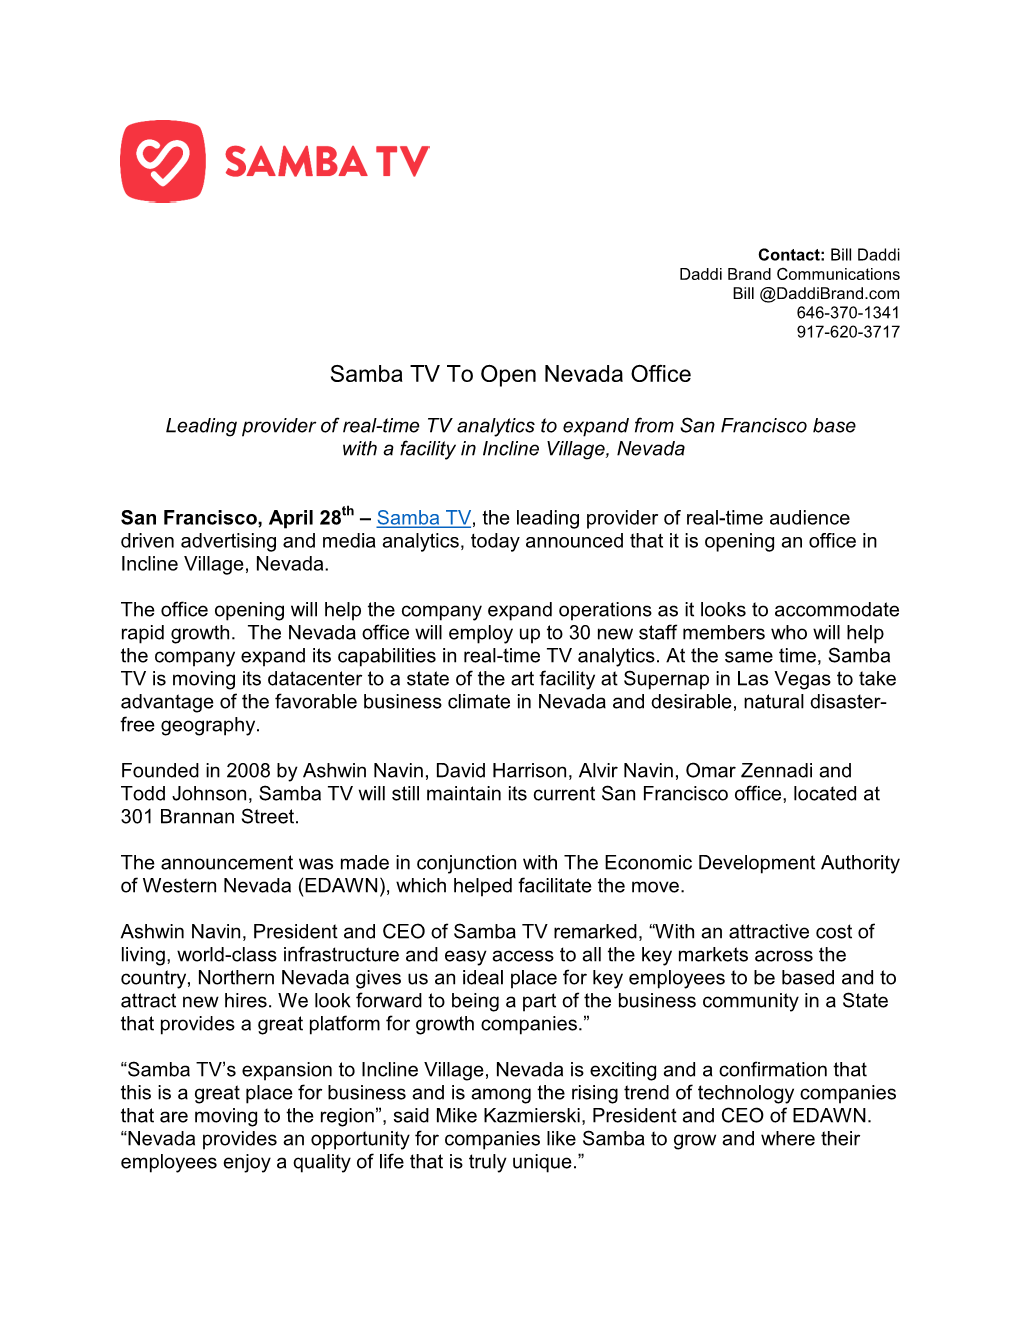 Samba TV to Open Nevada Office